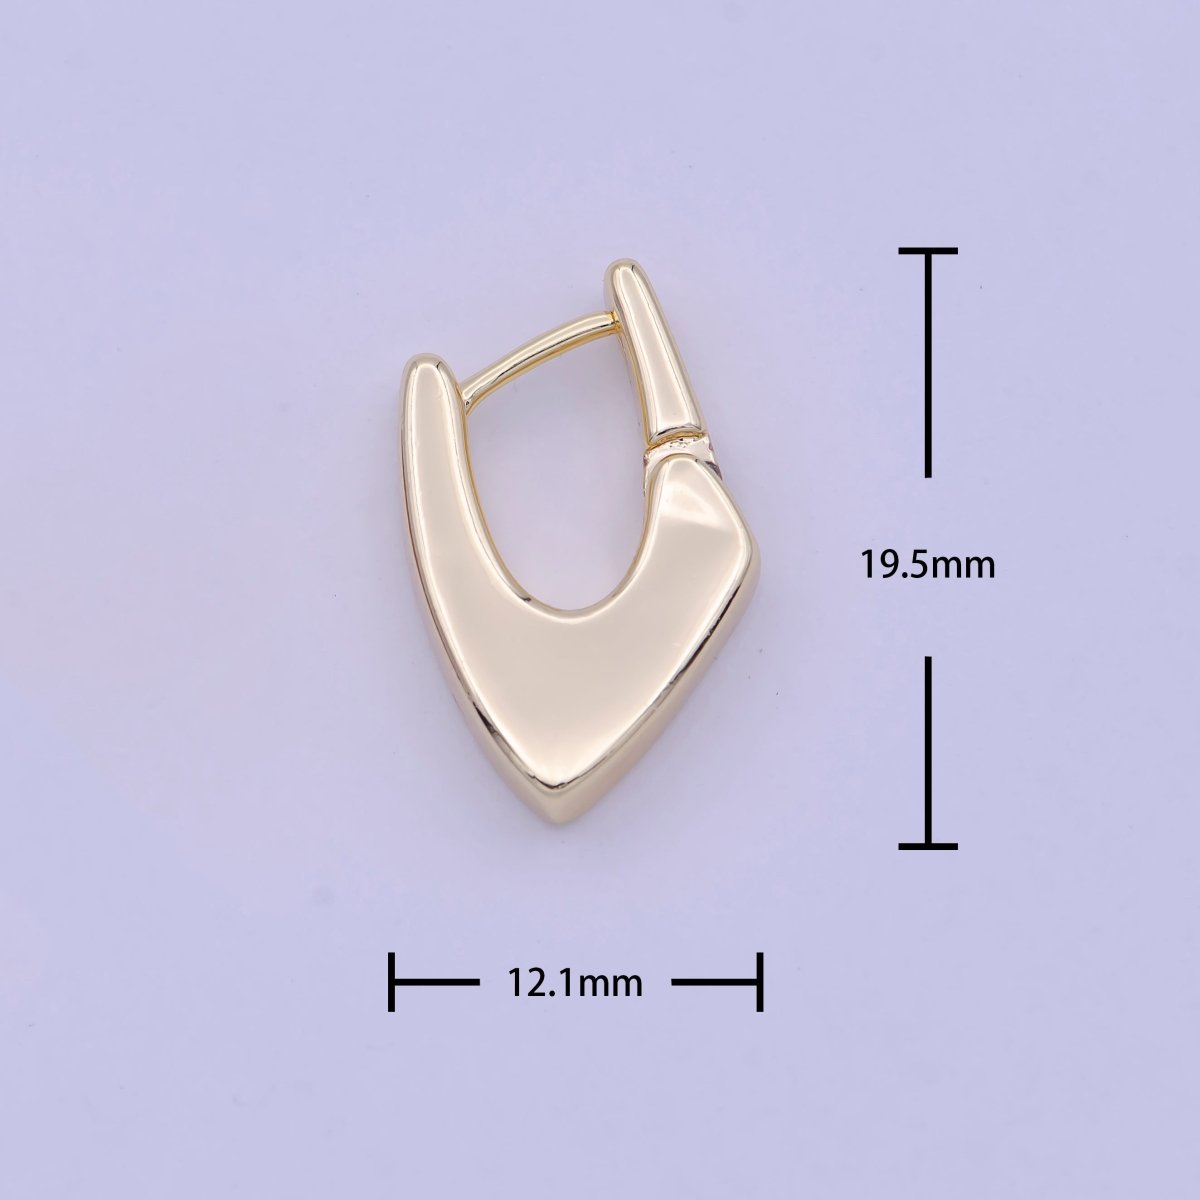 Modern Hoop Earrings • 14k Gold Filled Dainty Earrings • Huggie Hoops Earrings • Minimalist Earrings Wholesale Jewelry Q-176 - DLUXCA